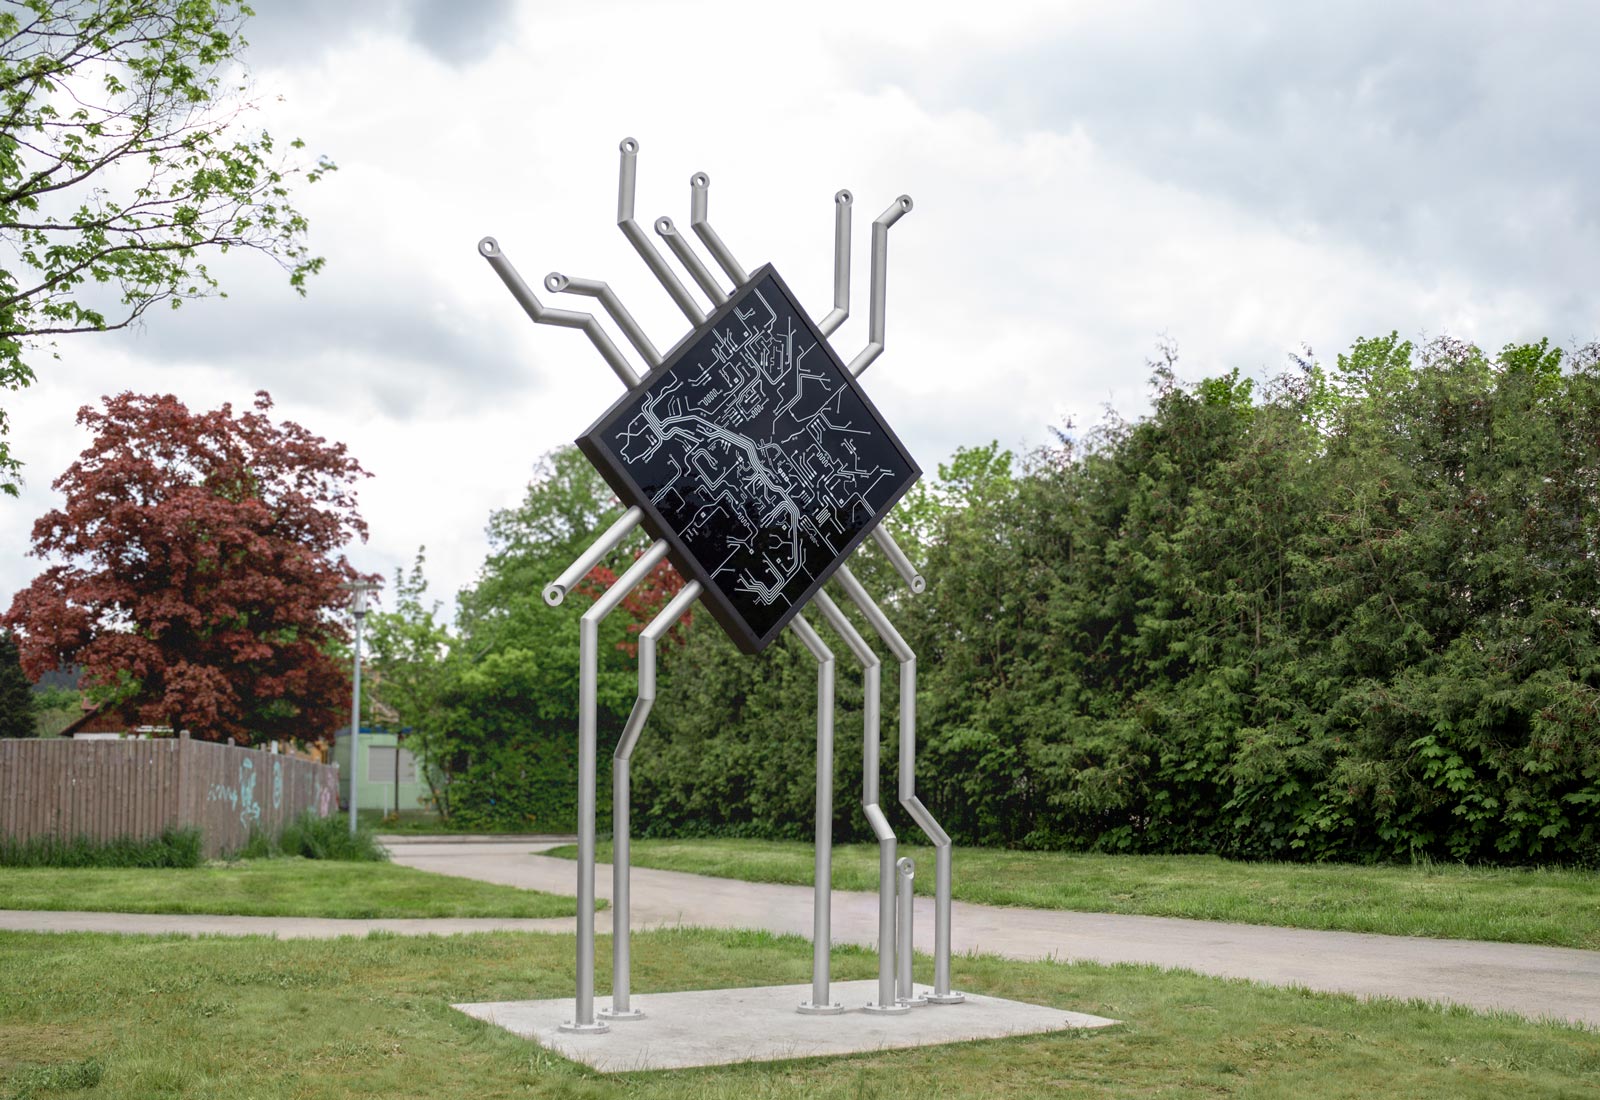 Makrocontroller 2021 light sculpture by Carolin Liebl and Nikolas Schmid-Pfähler